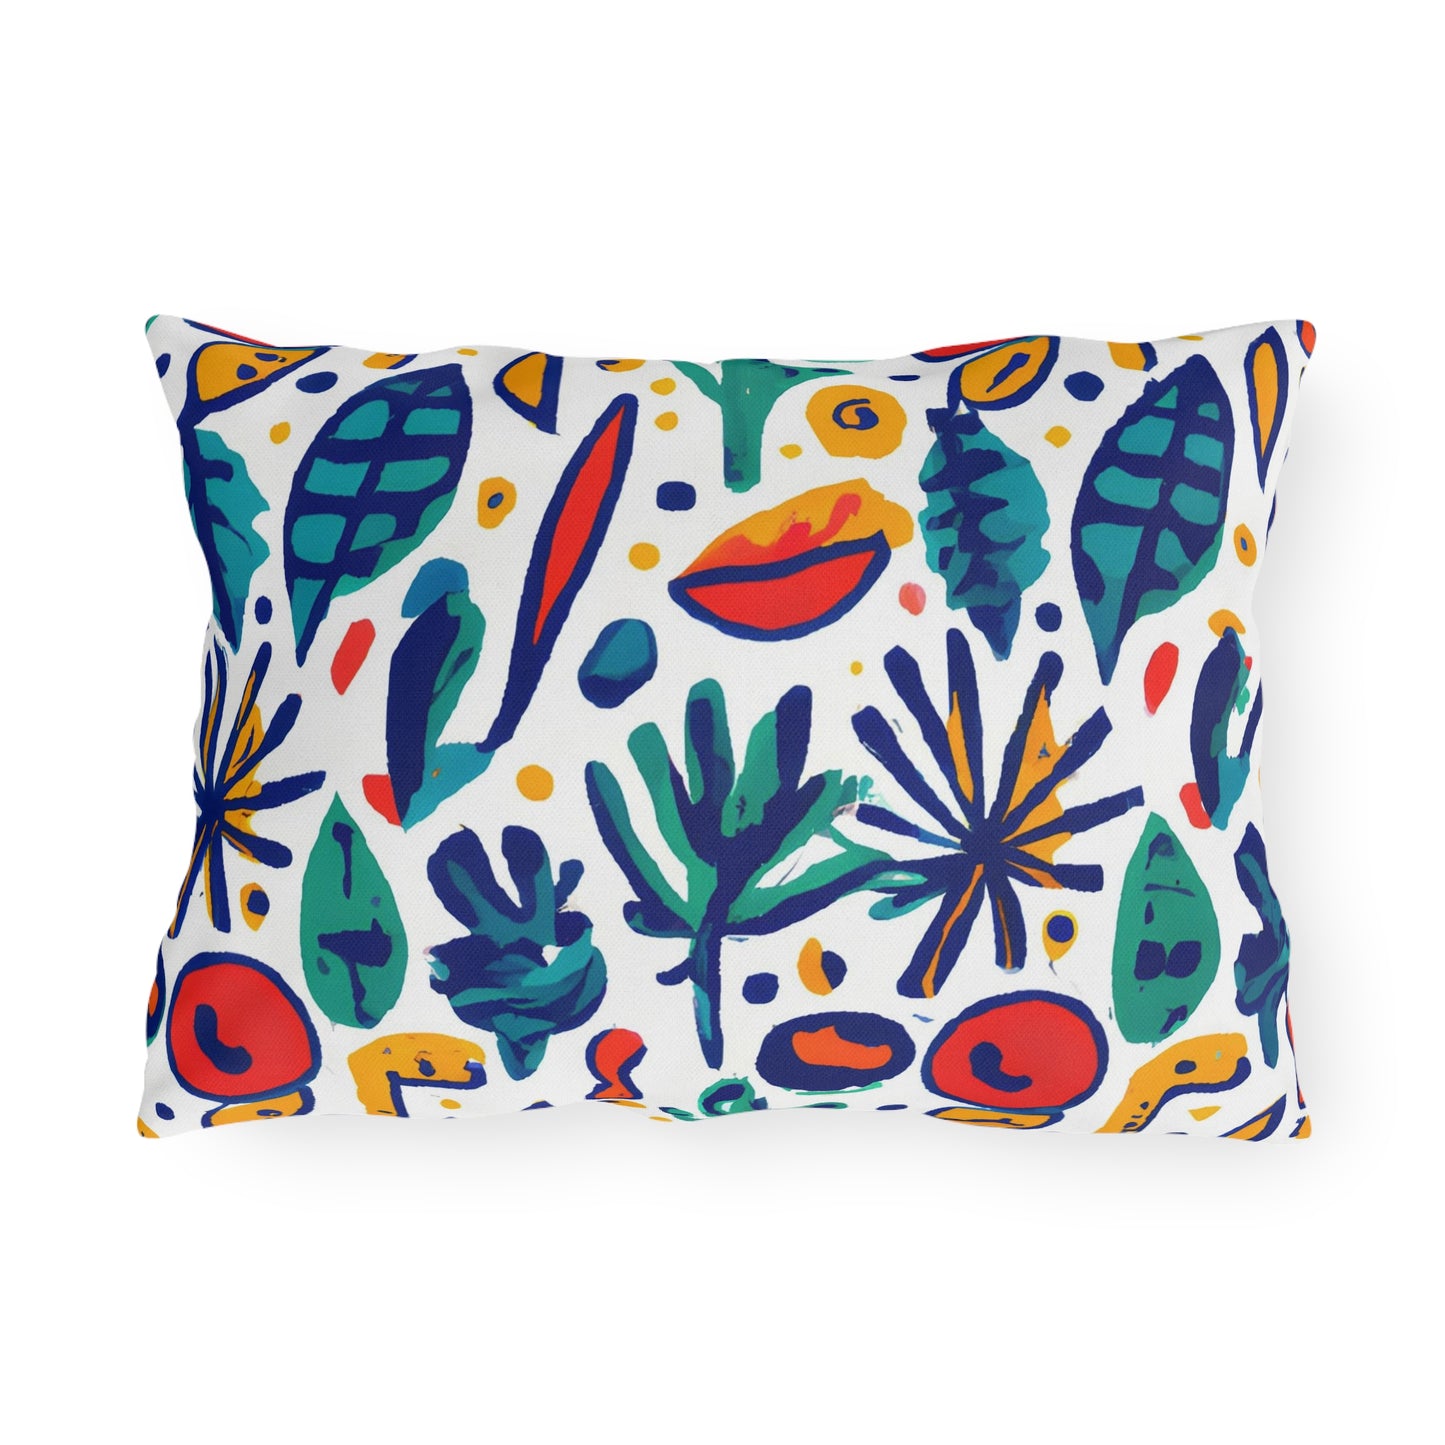 Chaparral Gertrude - Outdoor Art Pillow